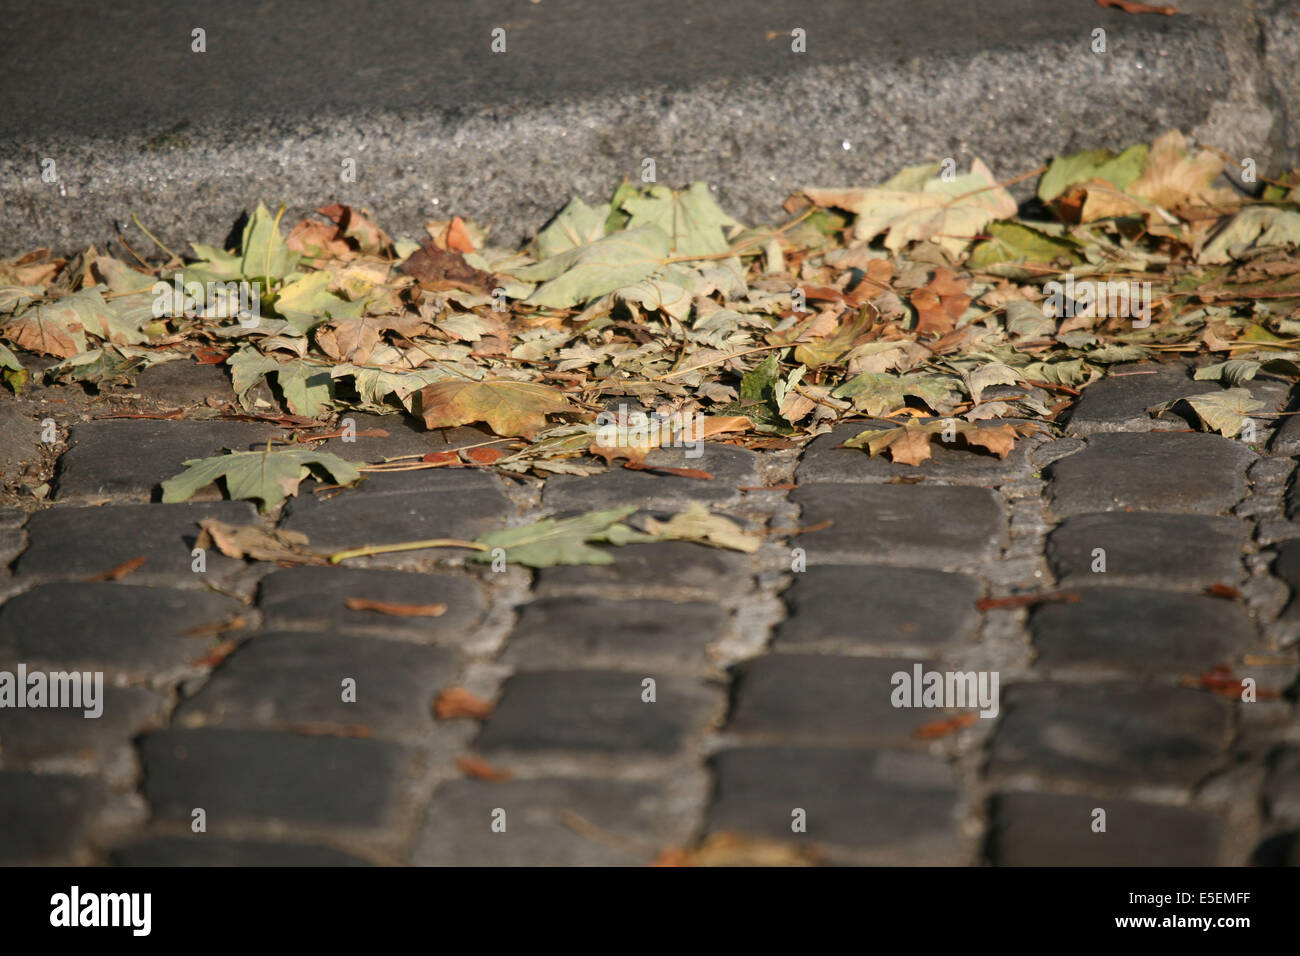 France, paris 14e, montparnasse, boulevard Raspail, feuilles mortes dan sle caniveau, paves, Stock Photo